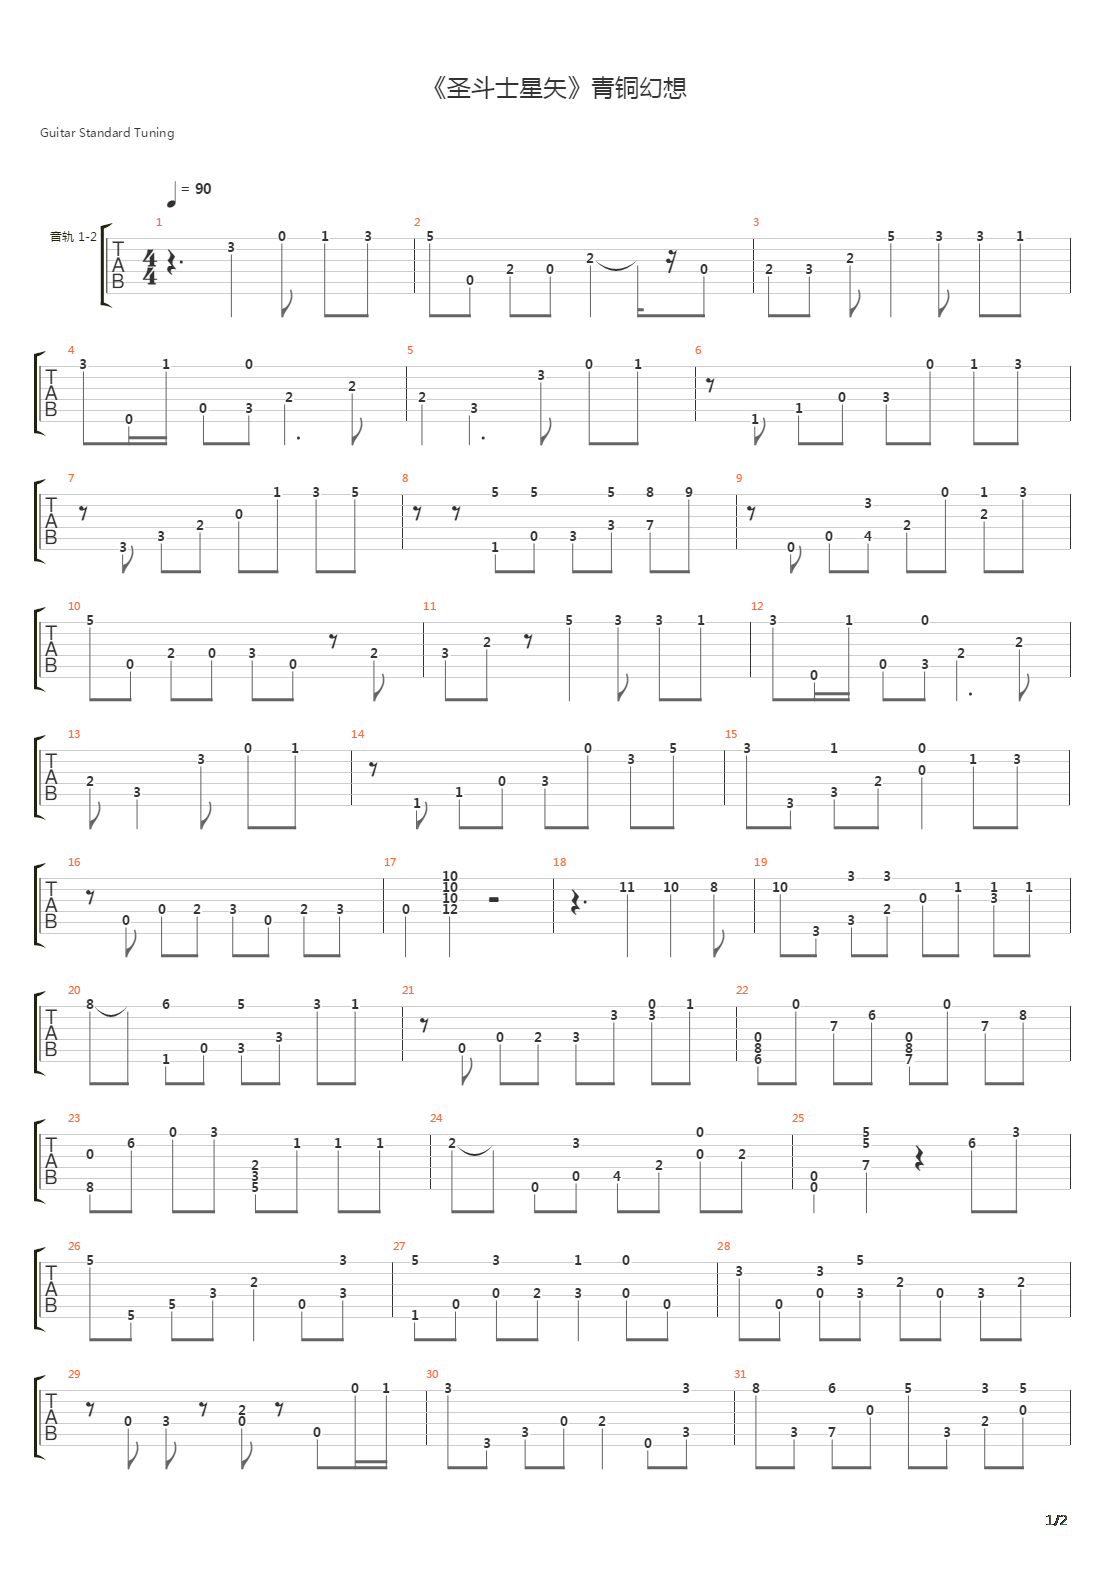 天马座的幻想-《圣斗士星矢》片头曲五线谱预览3-钢琴谱文件（五线谱、双手简谱、数字谱、Midi、PDF）免费下载